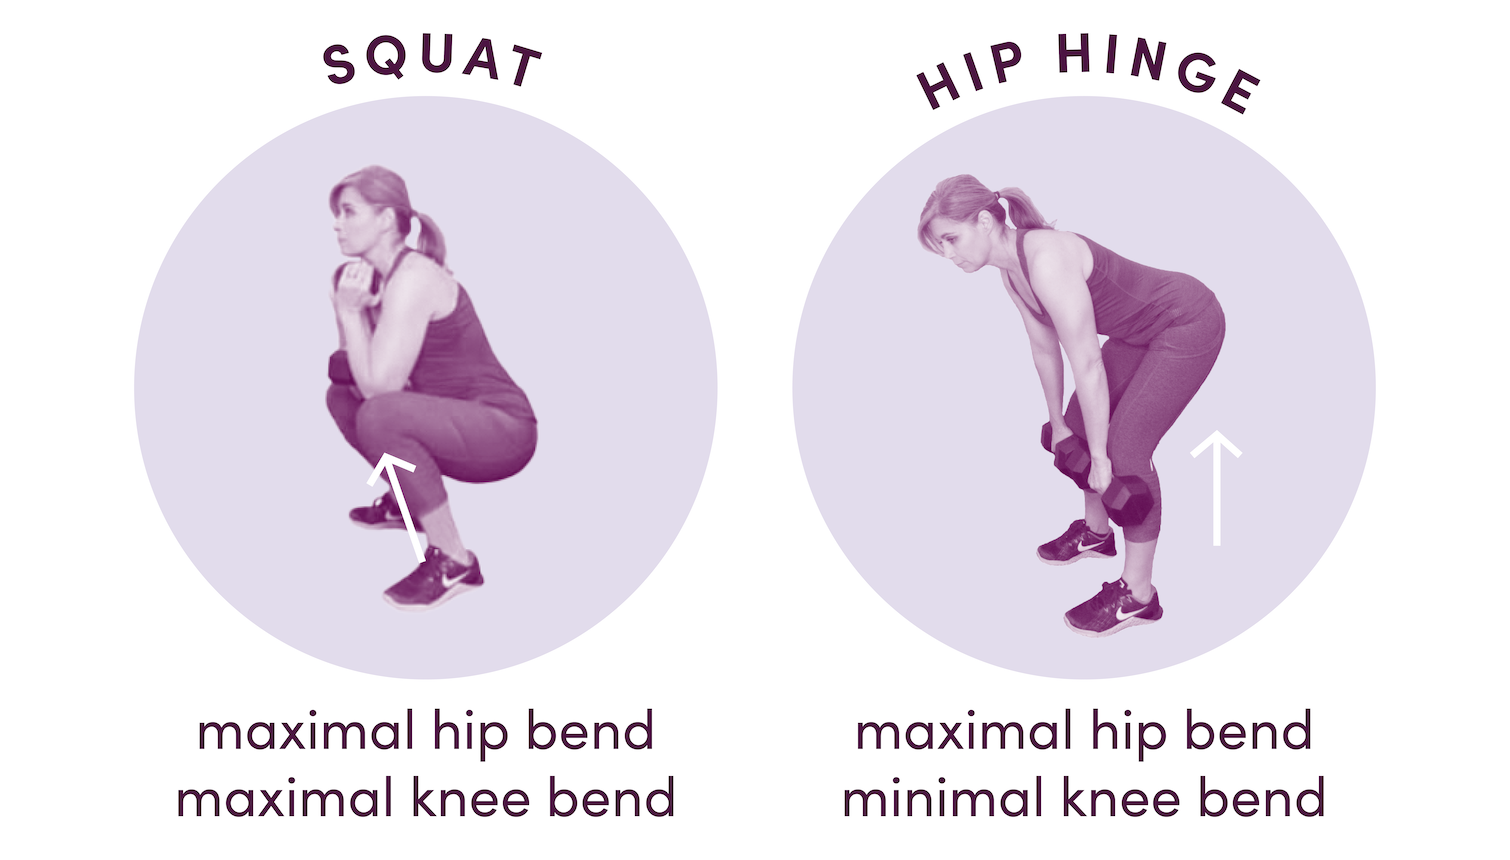 Squat versus hip hinge exercise in menopause